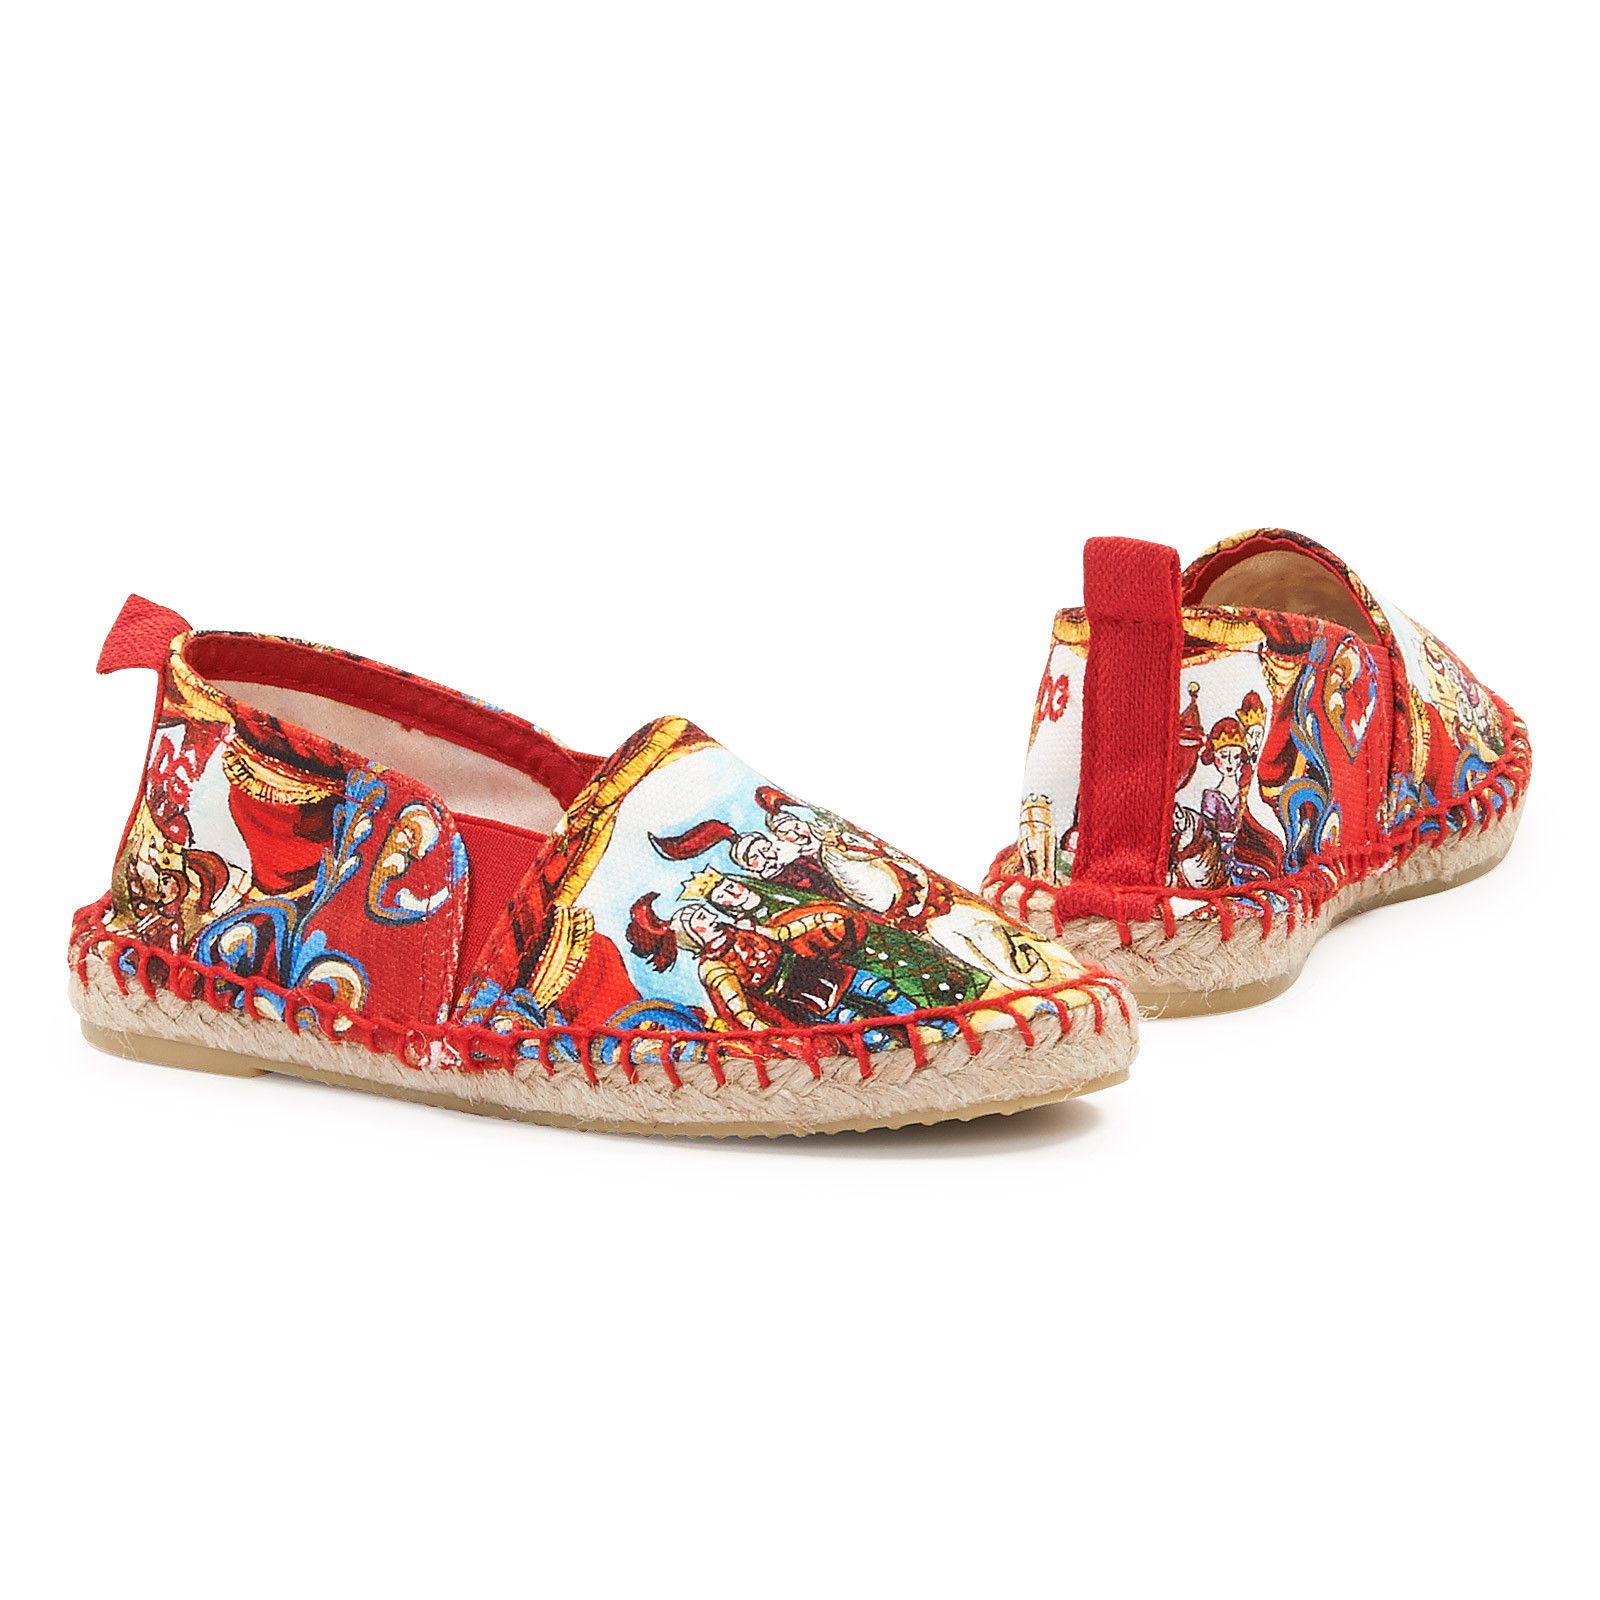 Girls Multicolor Printed Cotton Espadrille Shoes - CÉMAROSE | Children's Fashion Store